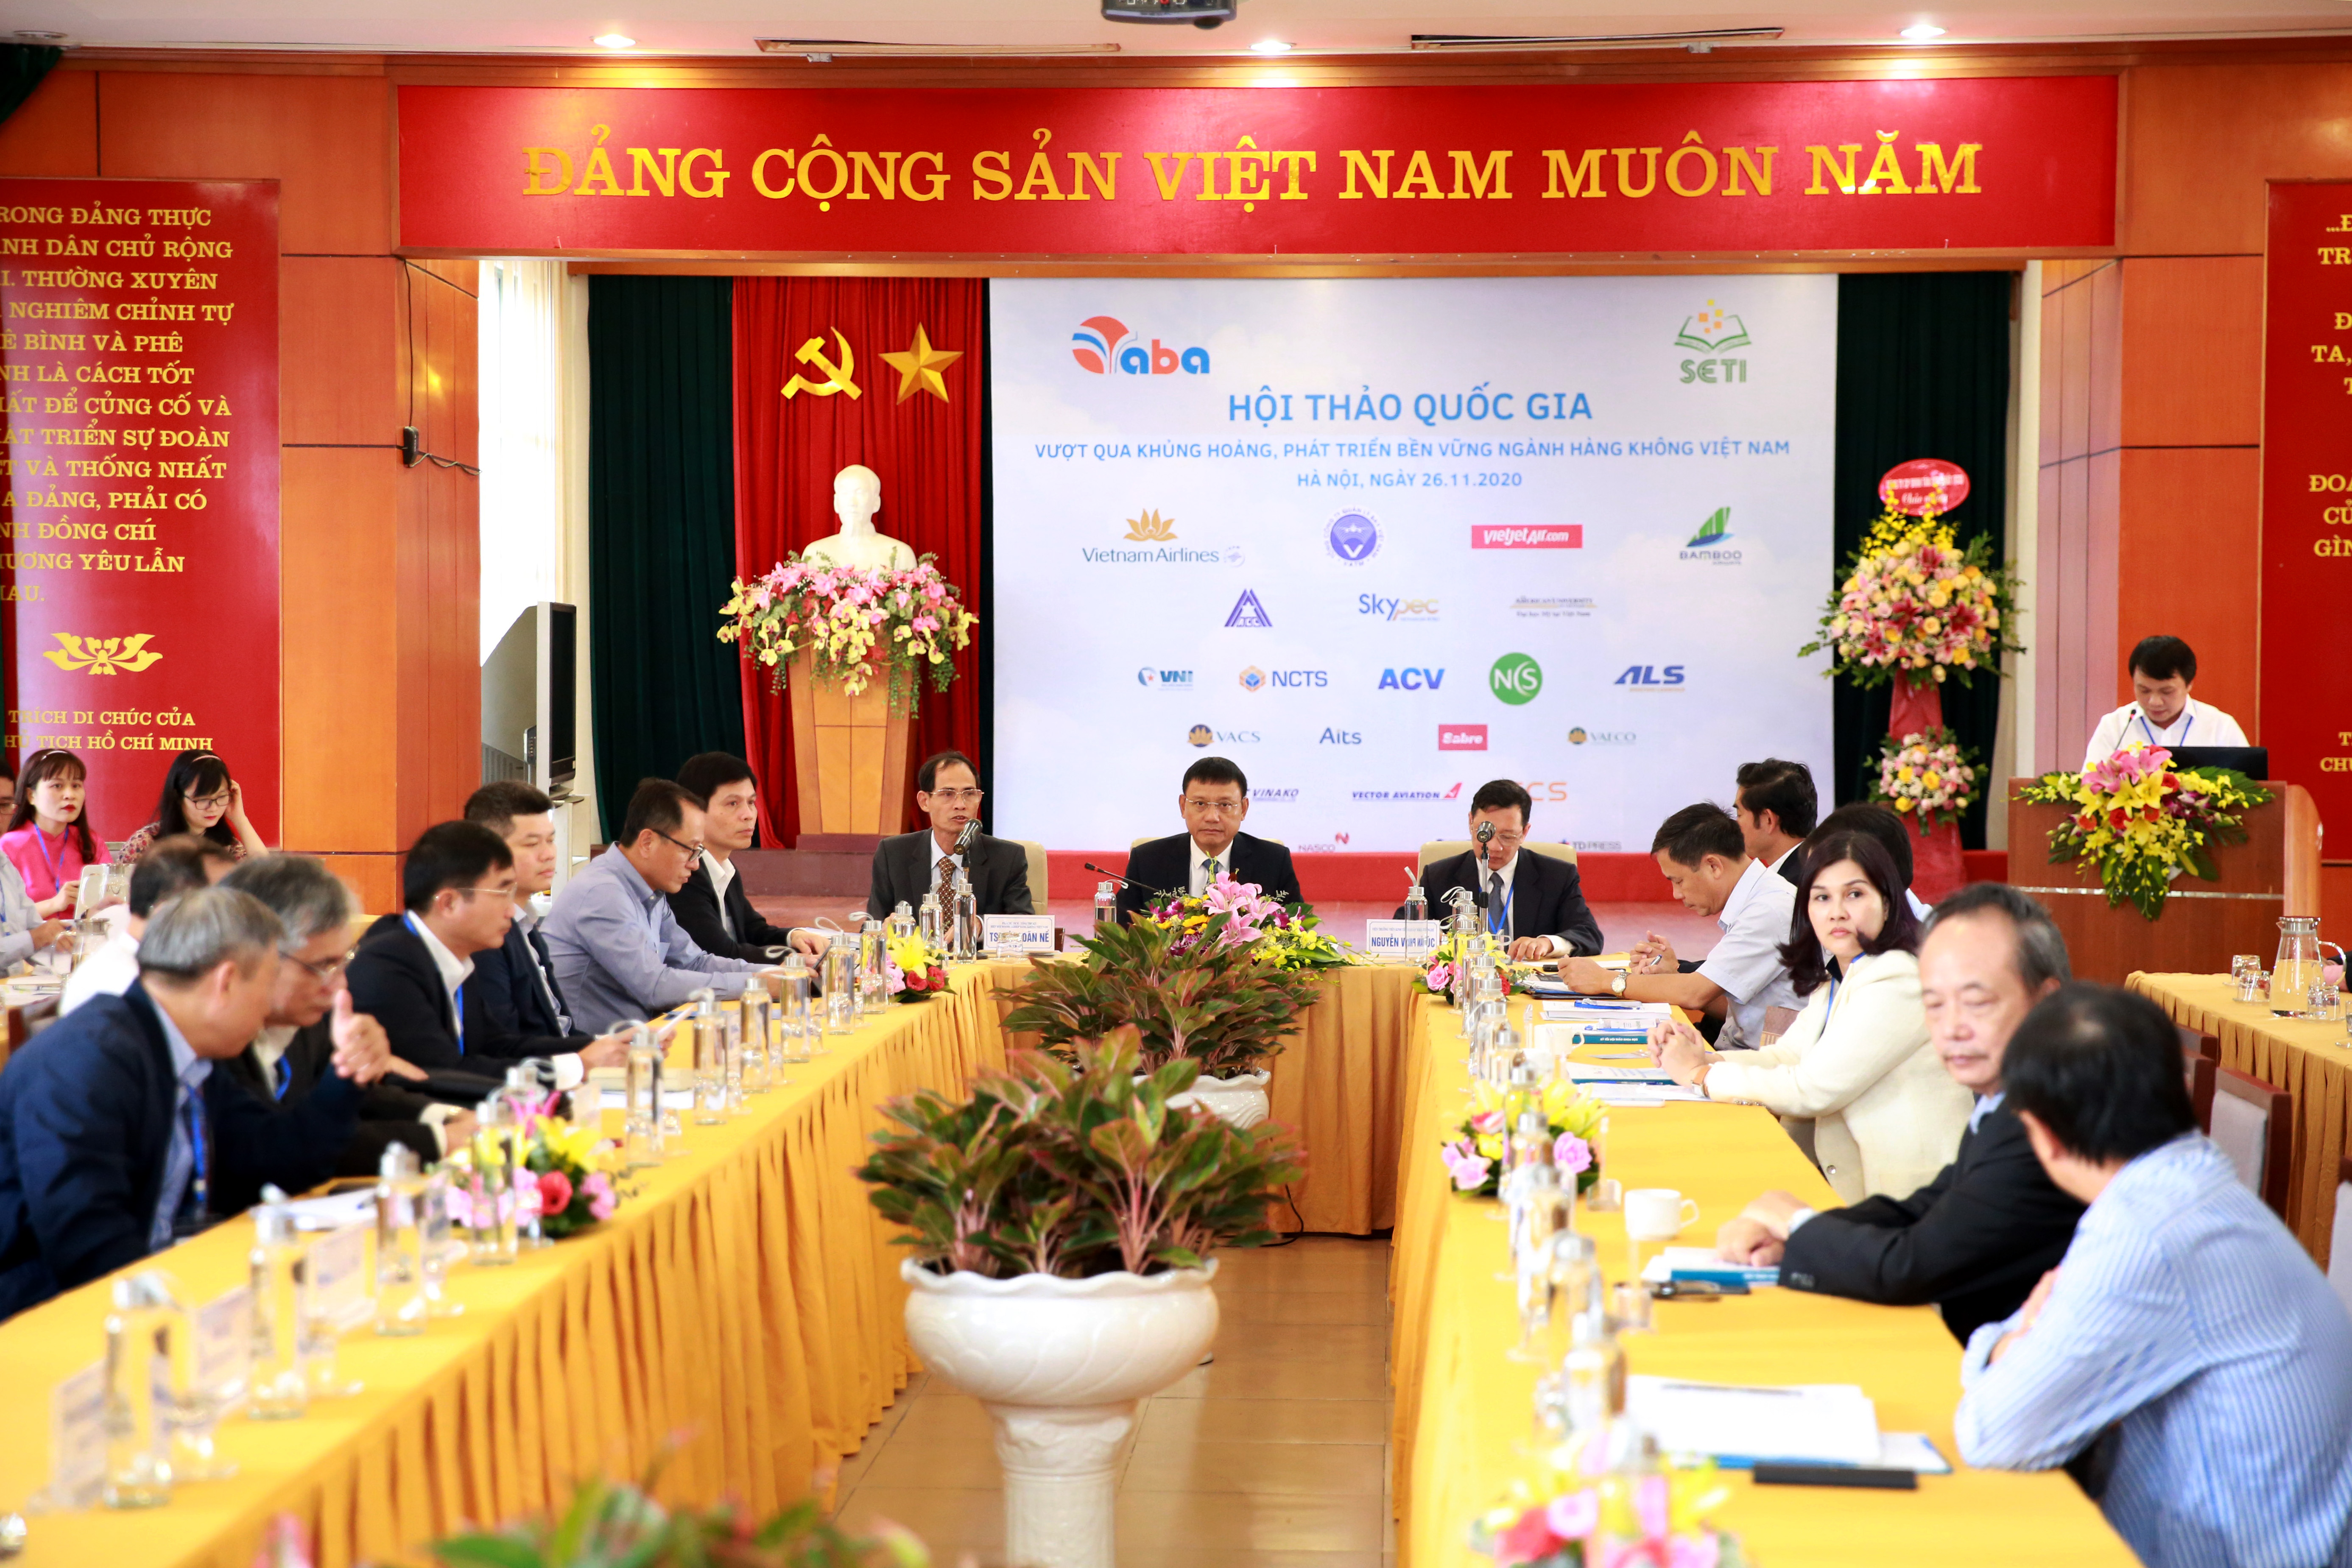 Hội thảo “Vượt qua khủng hoảng, phát triển bền vững ngành Hàng không Việt Nam”